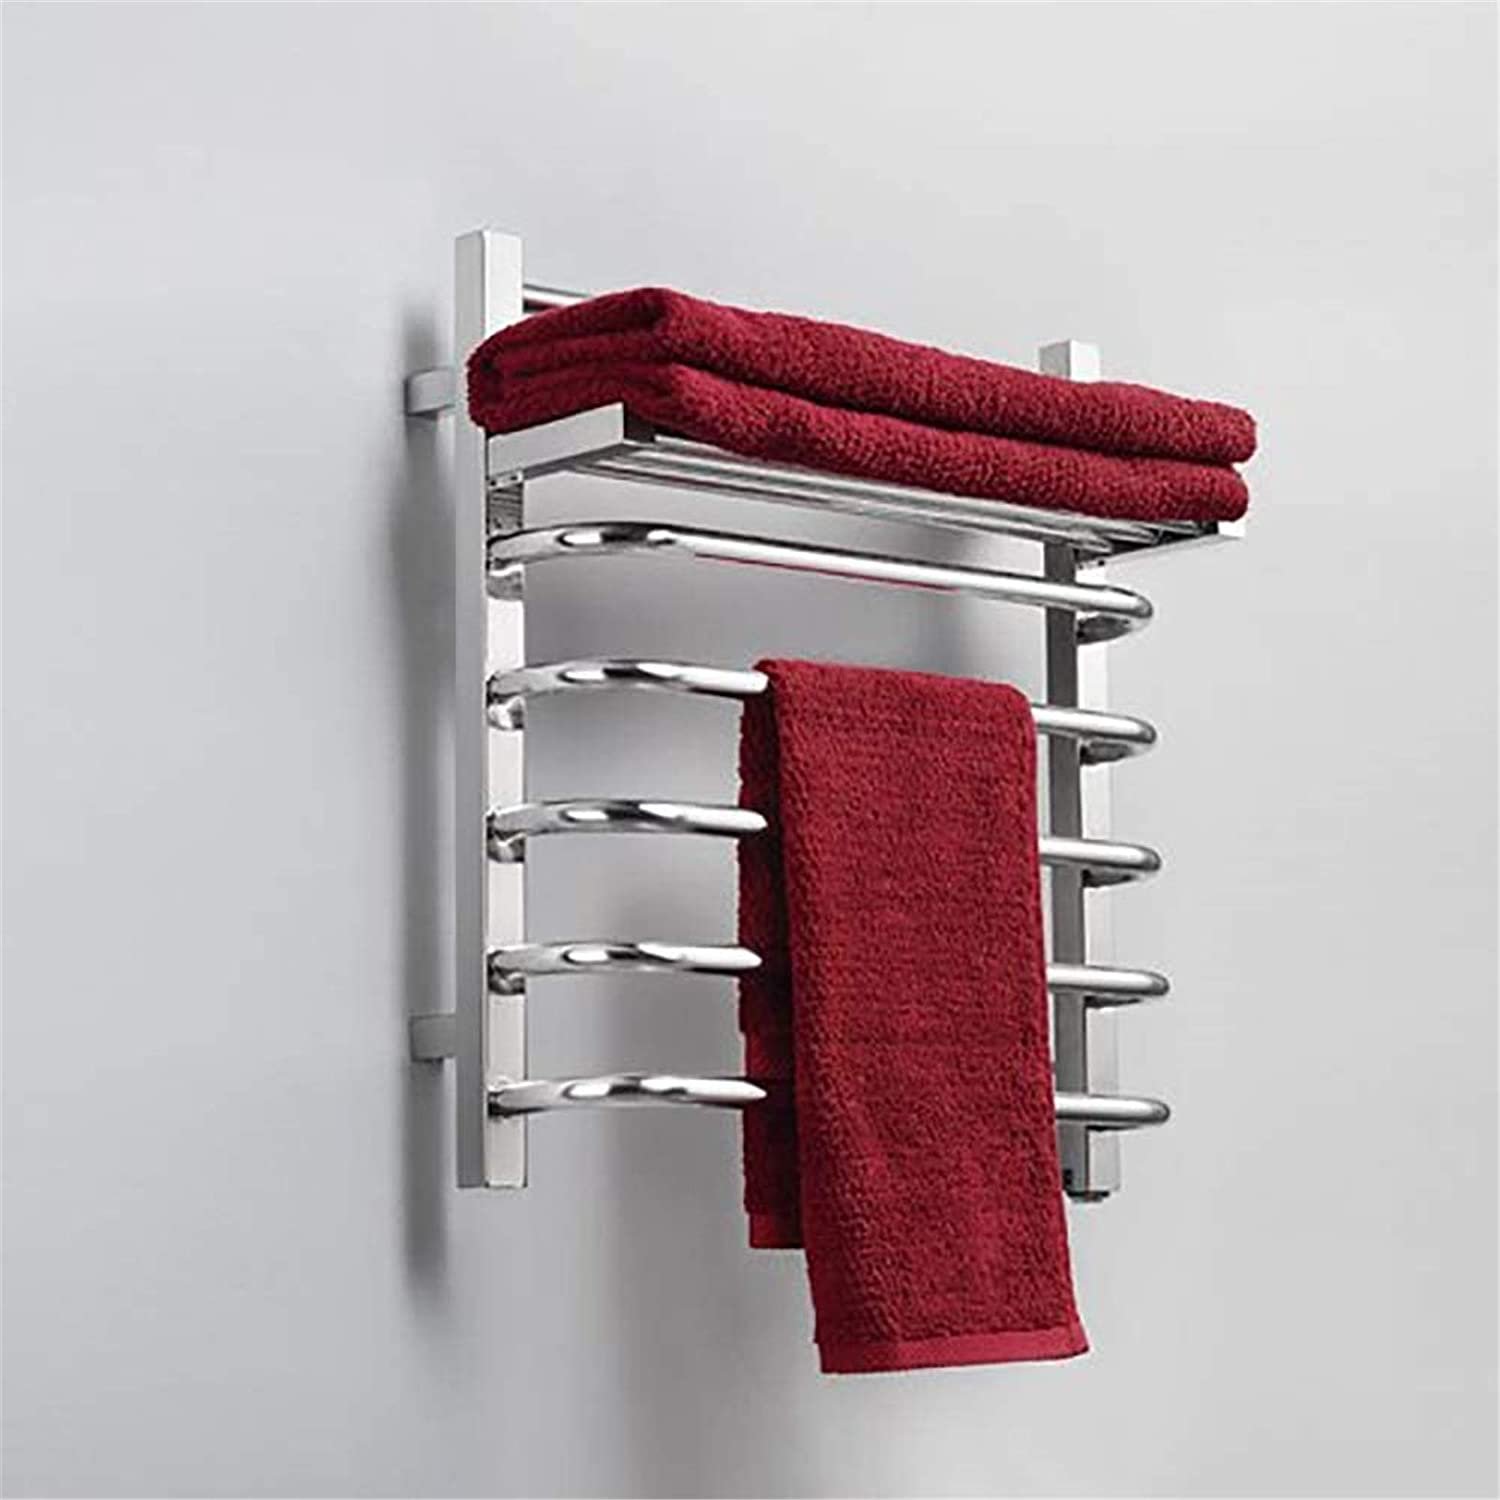 Высуши полотенце. Сушилка Towel Warmer. Сушилка для белья Stainless Steel Towel Rack. Полотенца сушители 50/80. Сушилка для полотенец в ванную.